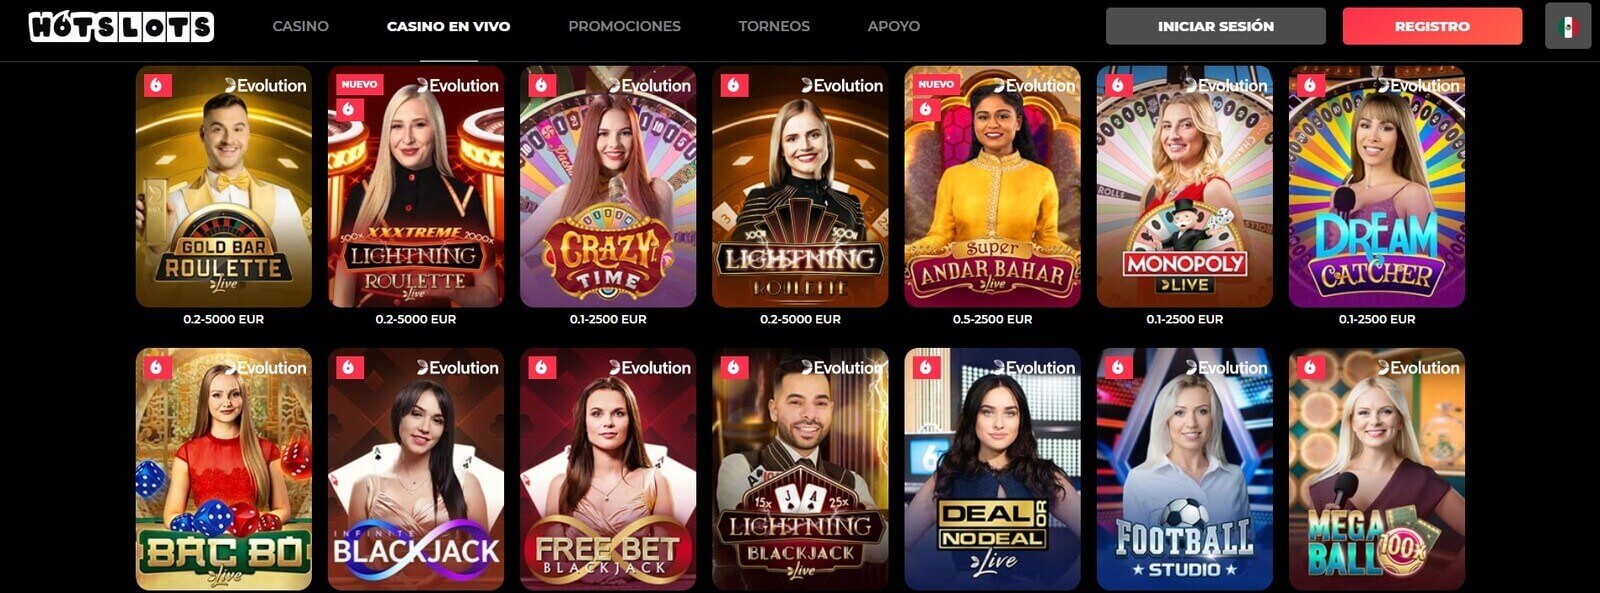 Juegos de casino en vivo de HotSlots Casino online en México